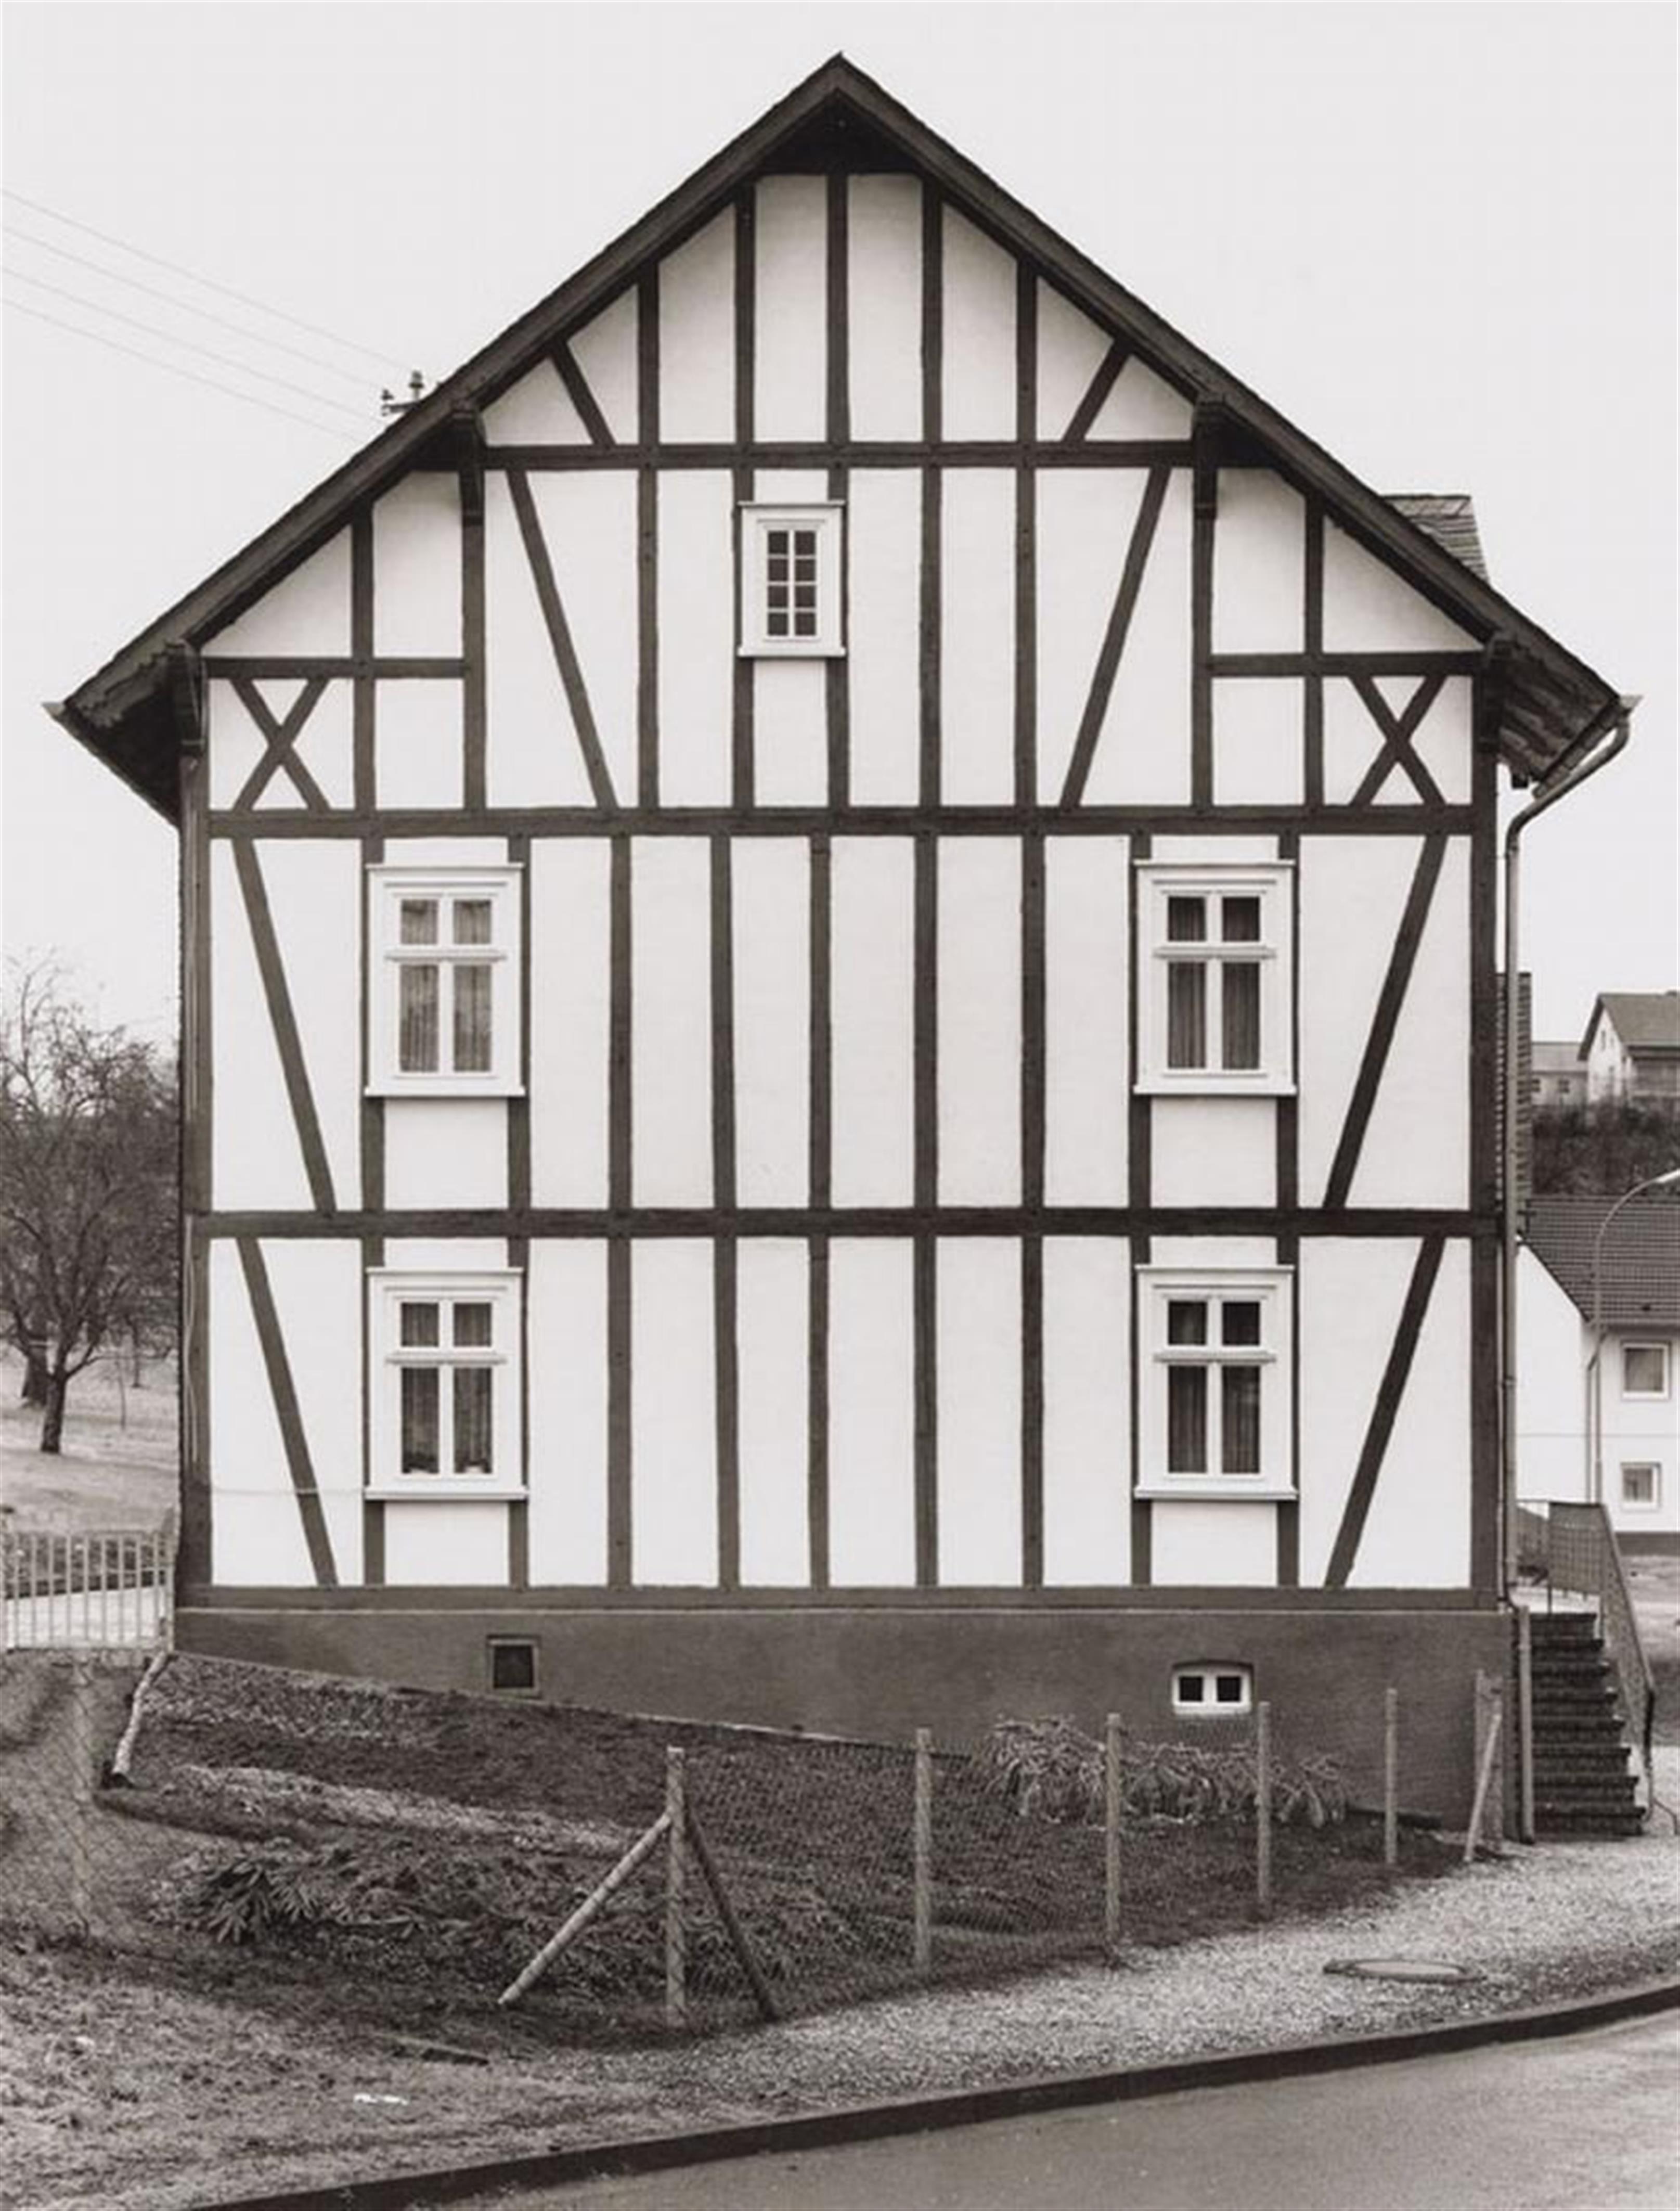 Bernd and Hilla Becher
Hilla Becher
Bernd Becher - Fachwerkhäuser (Half-timbered houses) - image-10